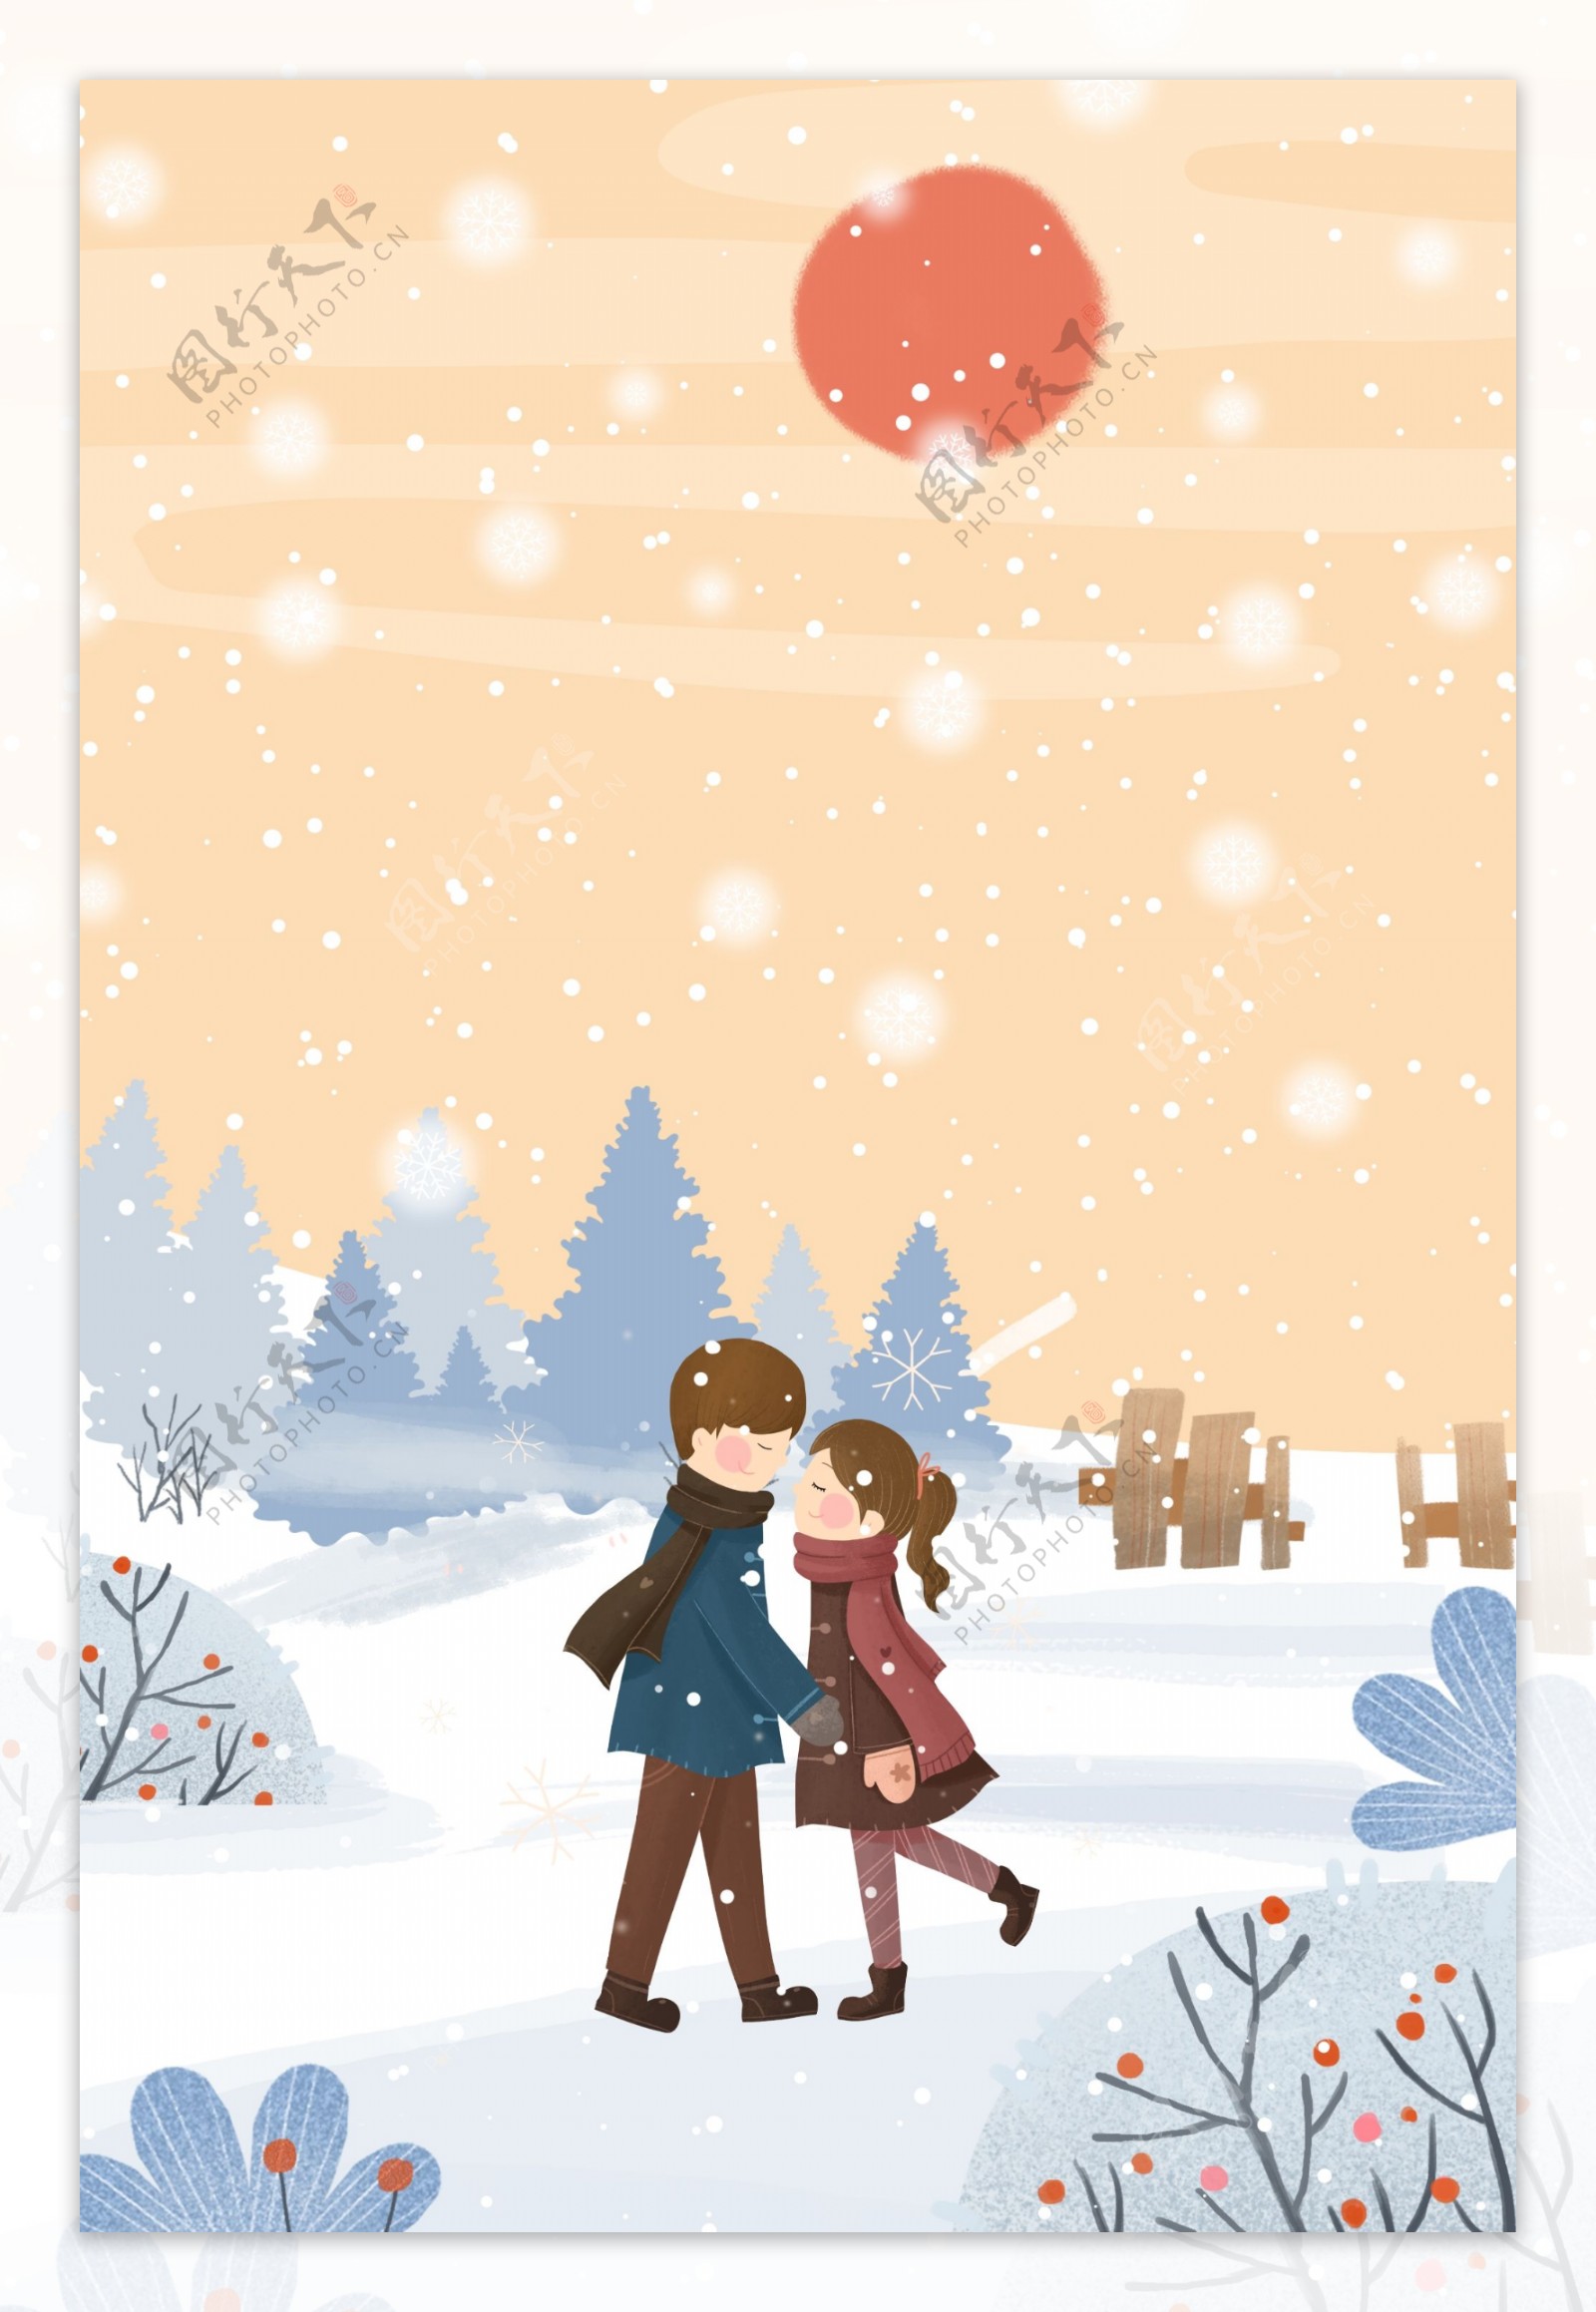 二十四节气之冬至情侣相拥雪地海报